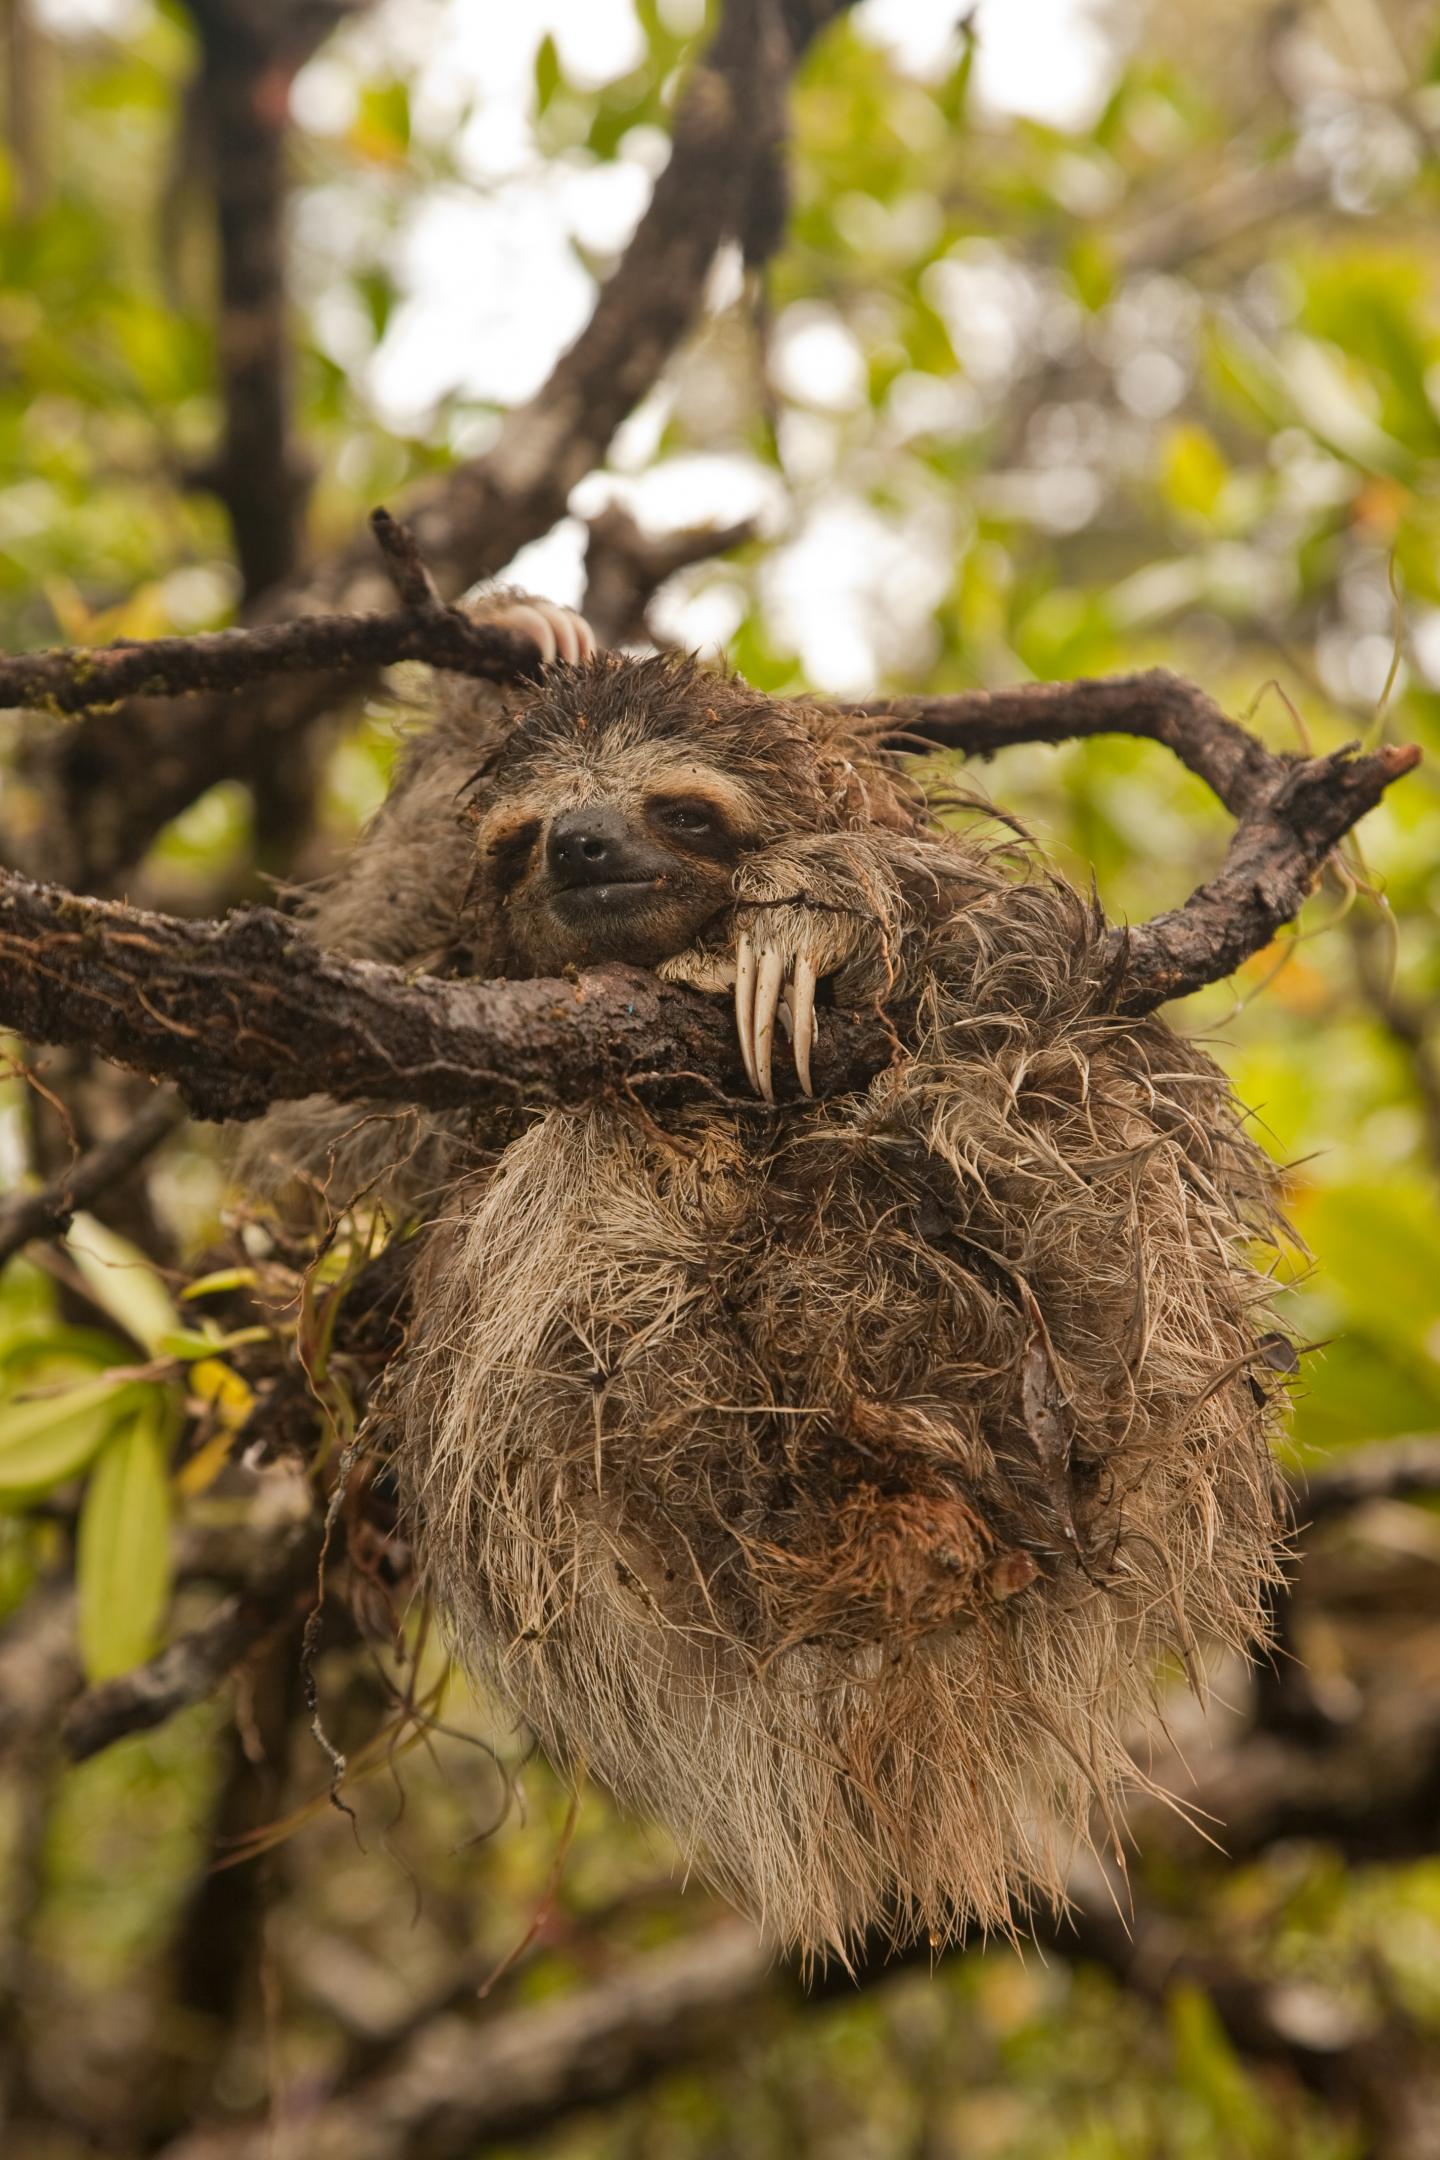 Pygmy Three-Toed Sloth